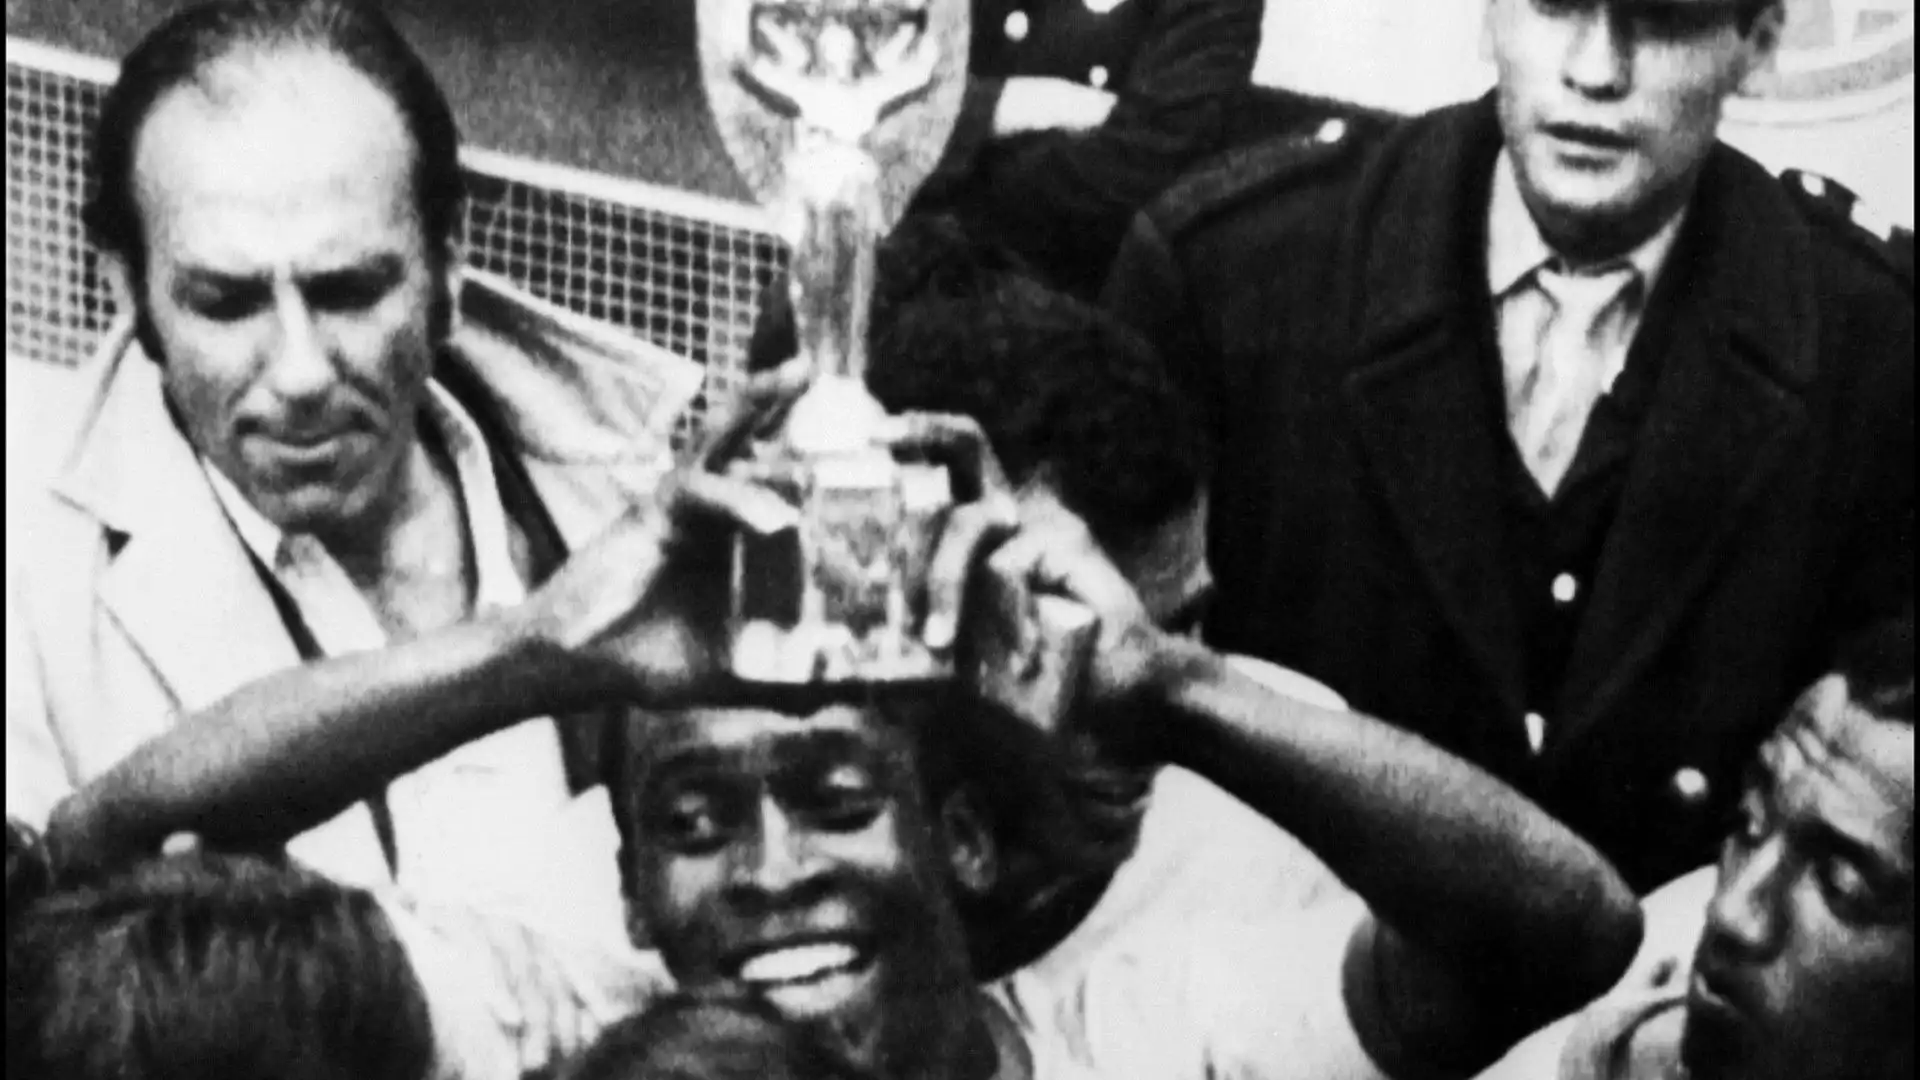 Il suo capolavoro, secondo molti, fu però la partecipazione ai Mondiali 1970: anch'essi vinti, furono i suoi terzi personali. Un altro record incredibile